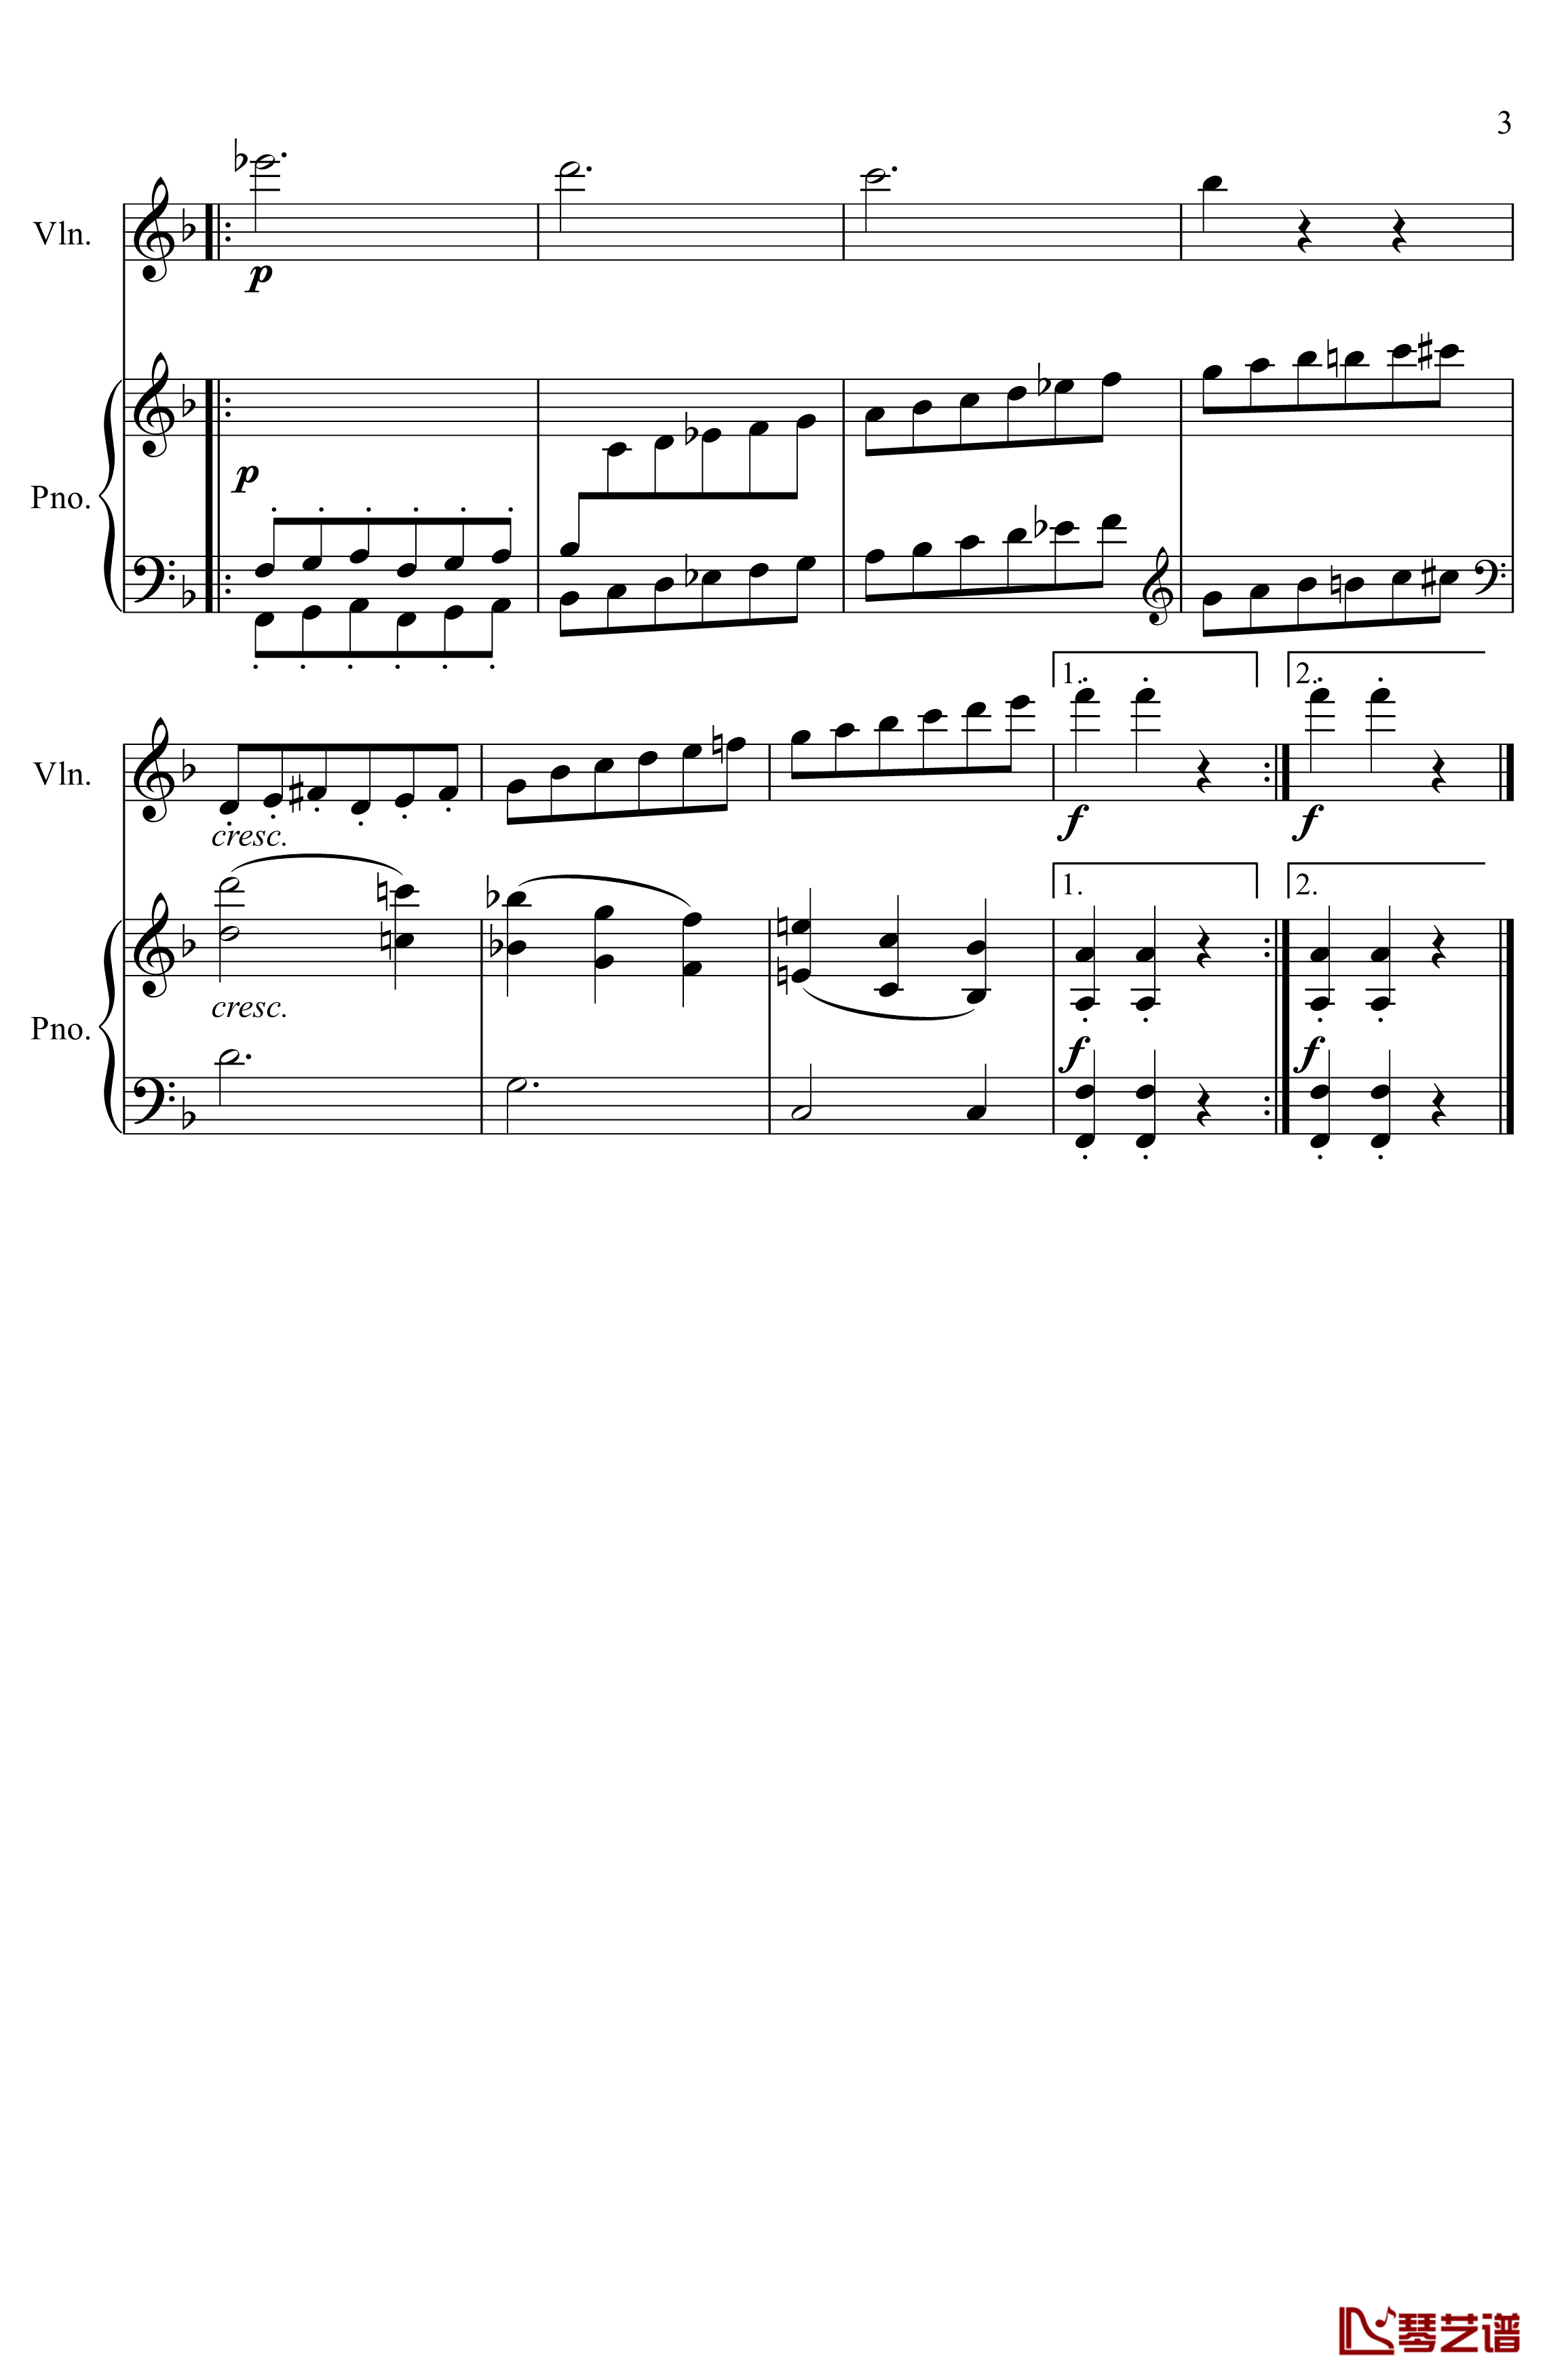 第5小提琴与钢琴奏鸣曲钢琴谱-第三乐章-贝多芬-beethoven3